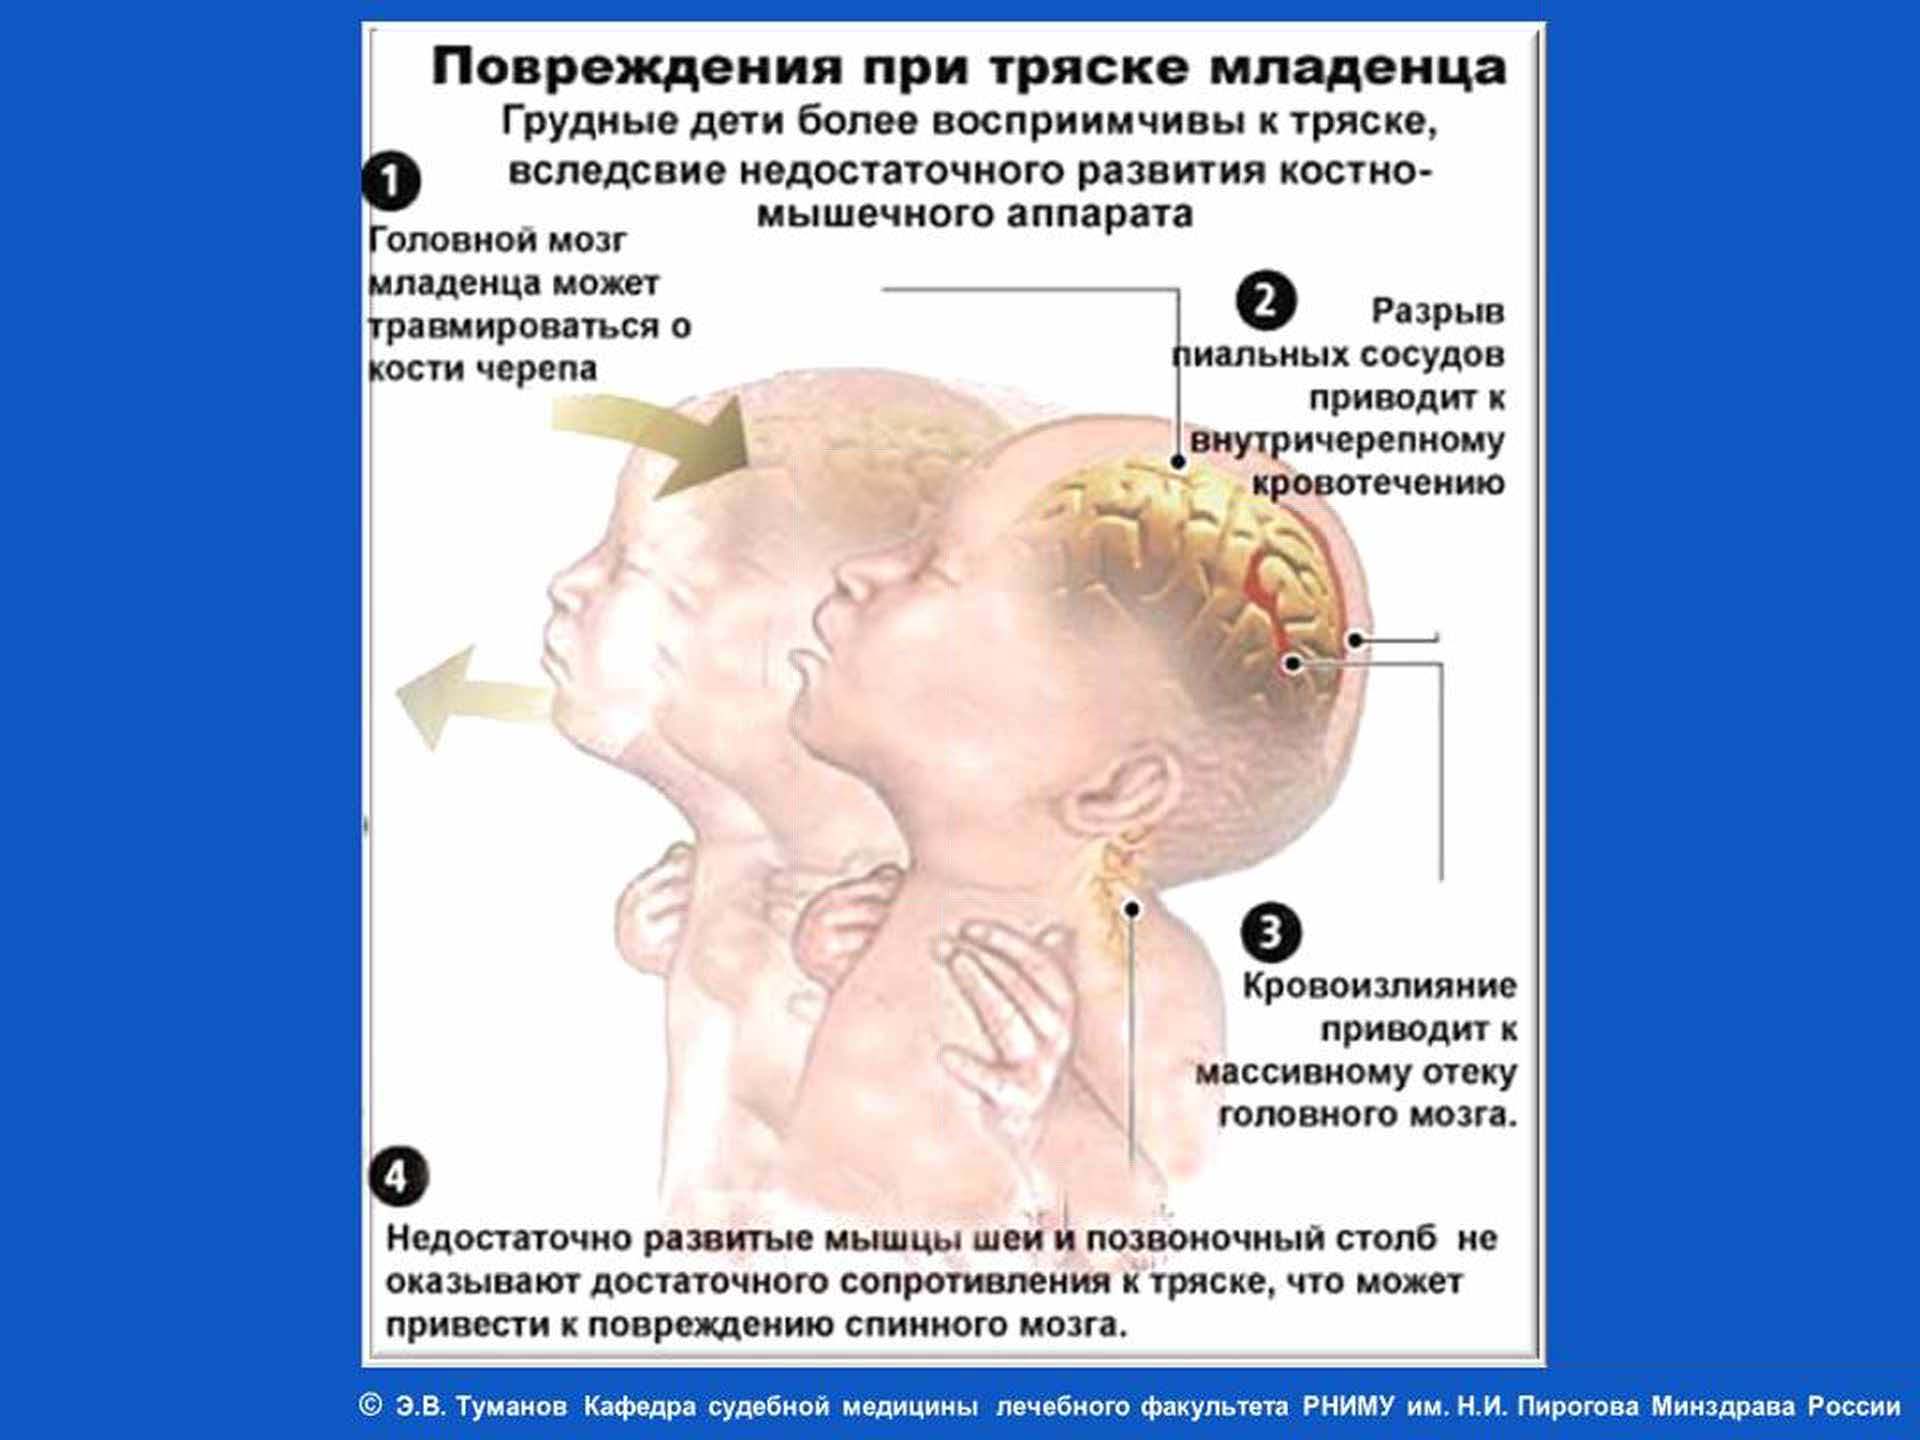 Что такое синдром тряски младенца